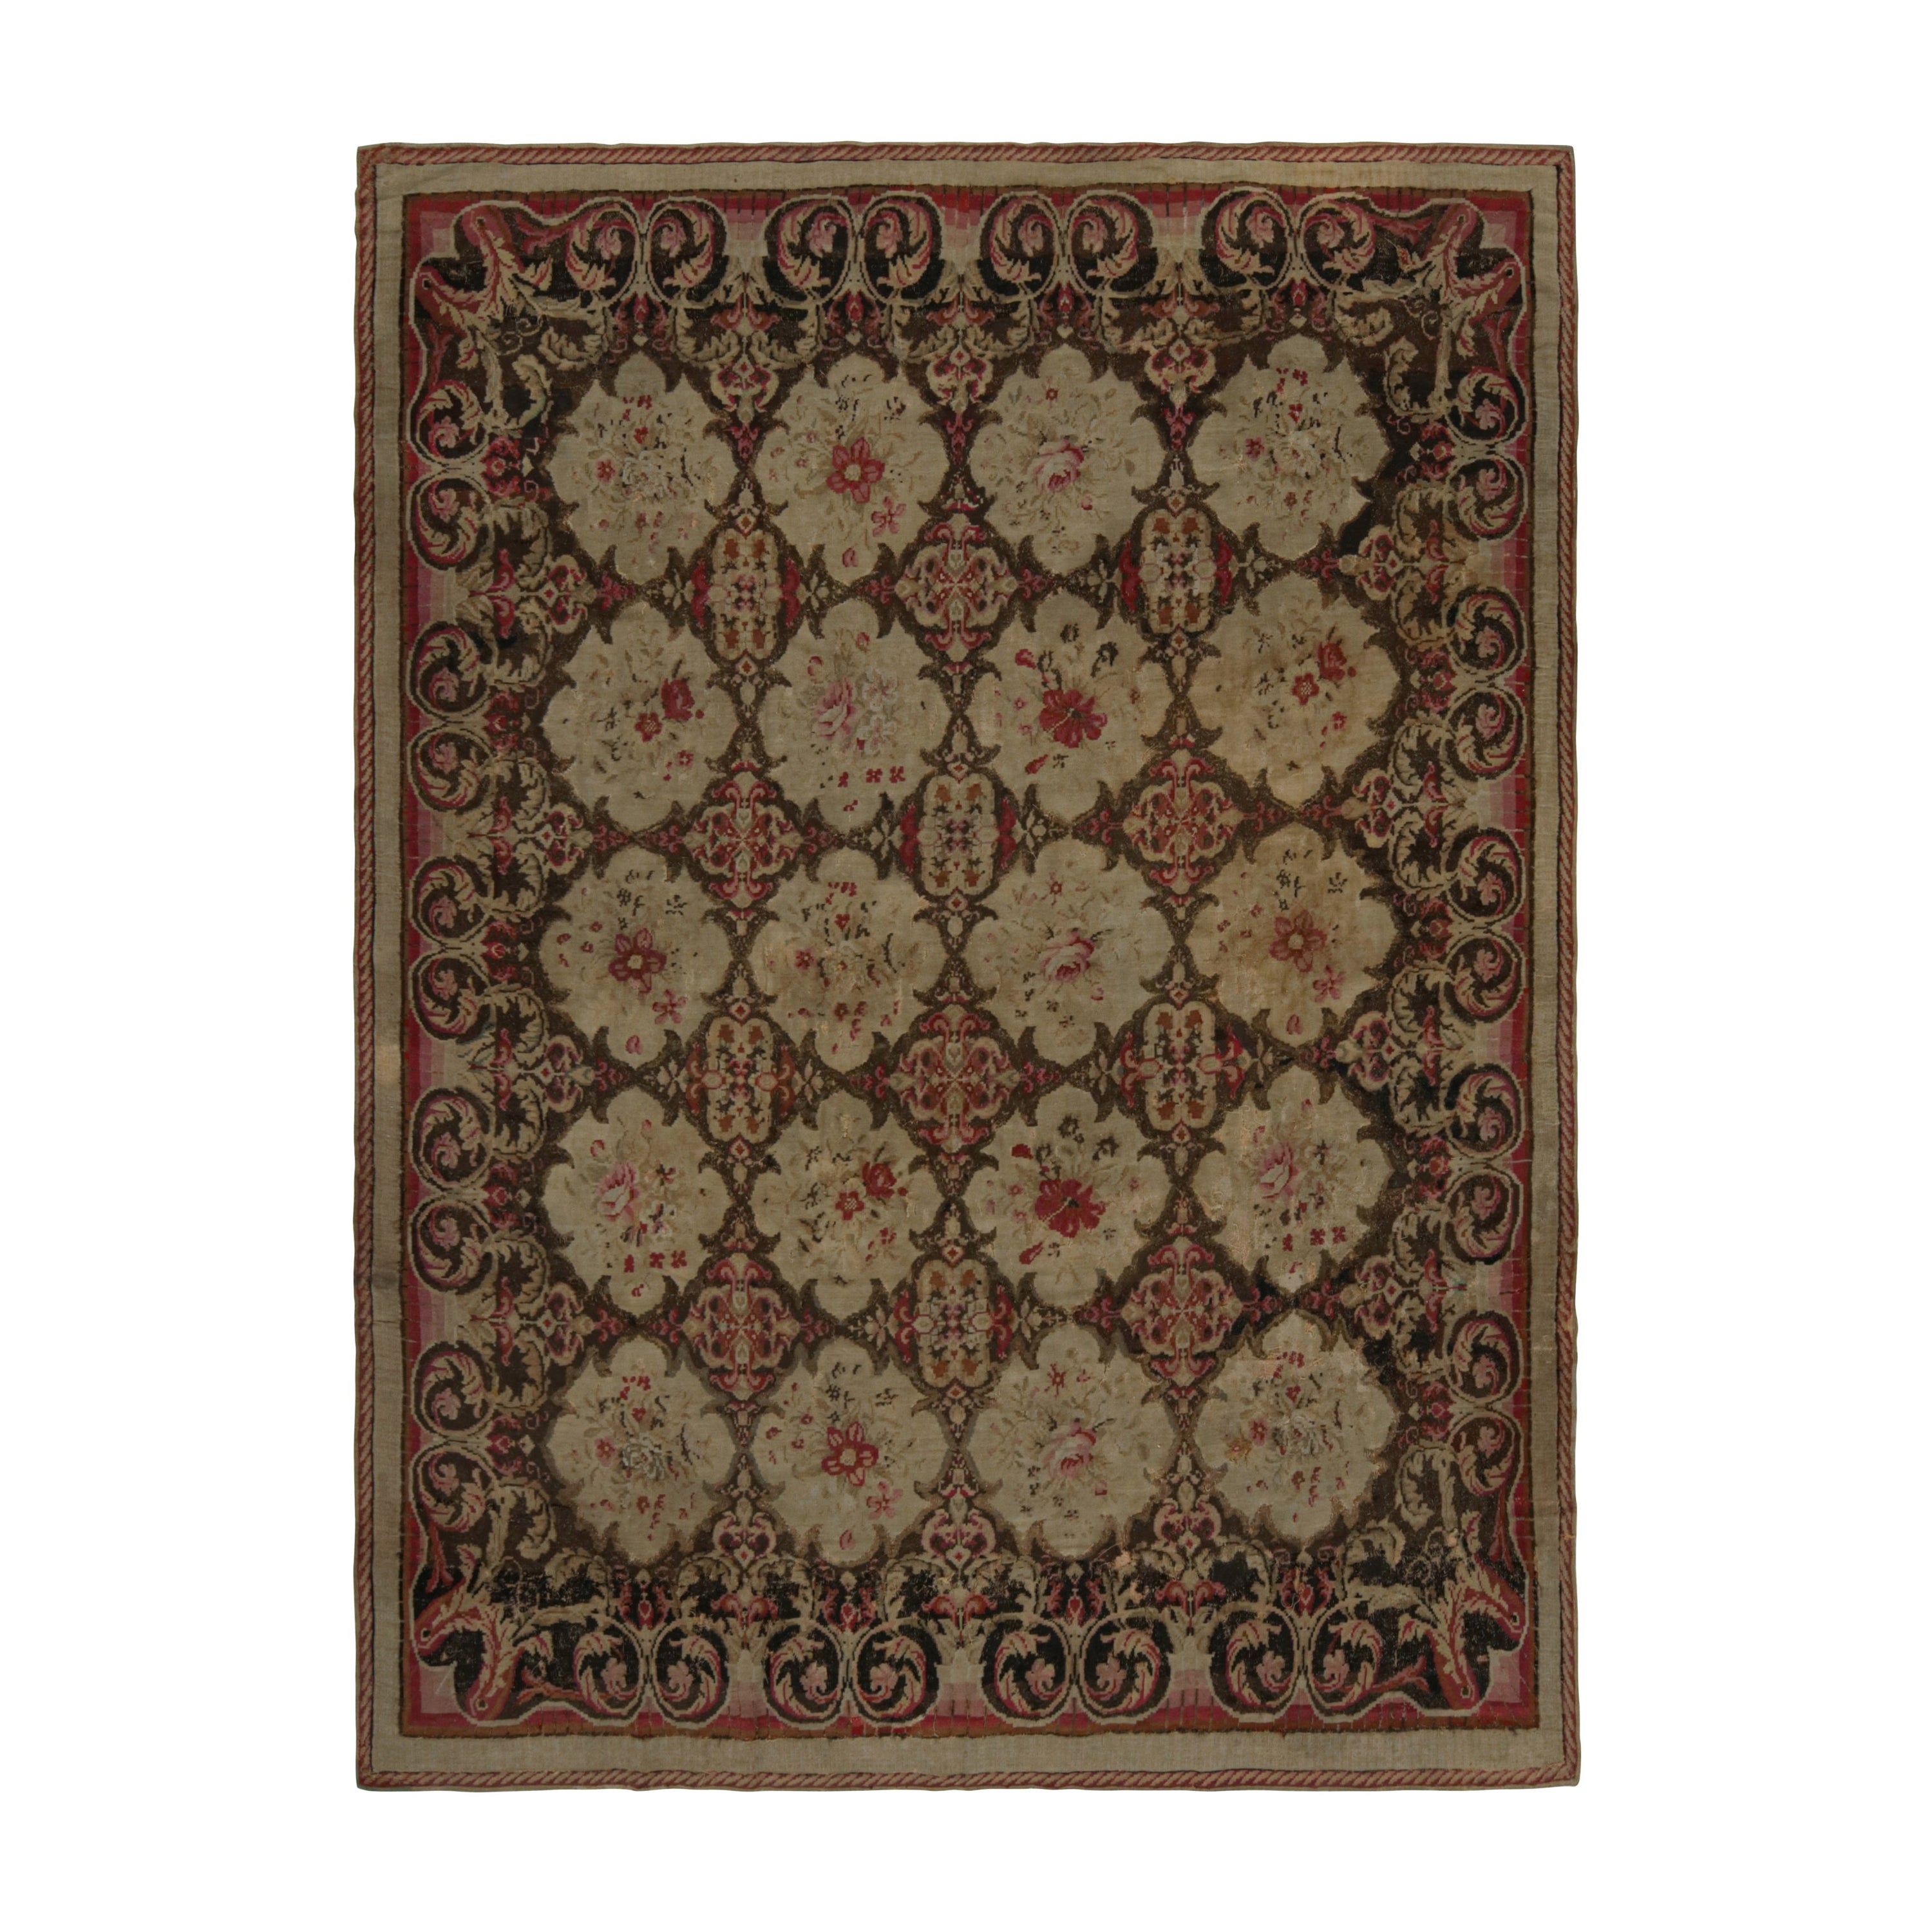 Antique tapis Kilim de Bessarabie en Brown, avec motifs floraux, de Rug & Kilim